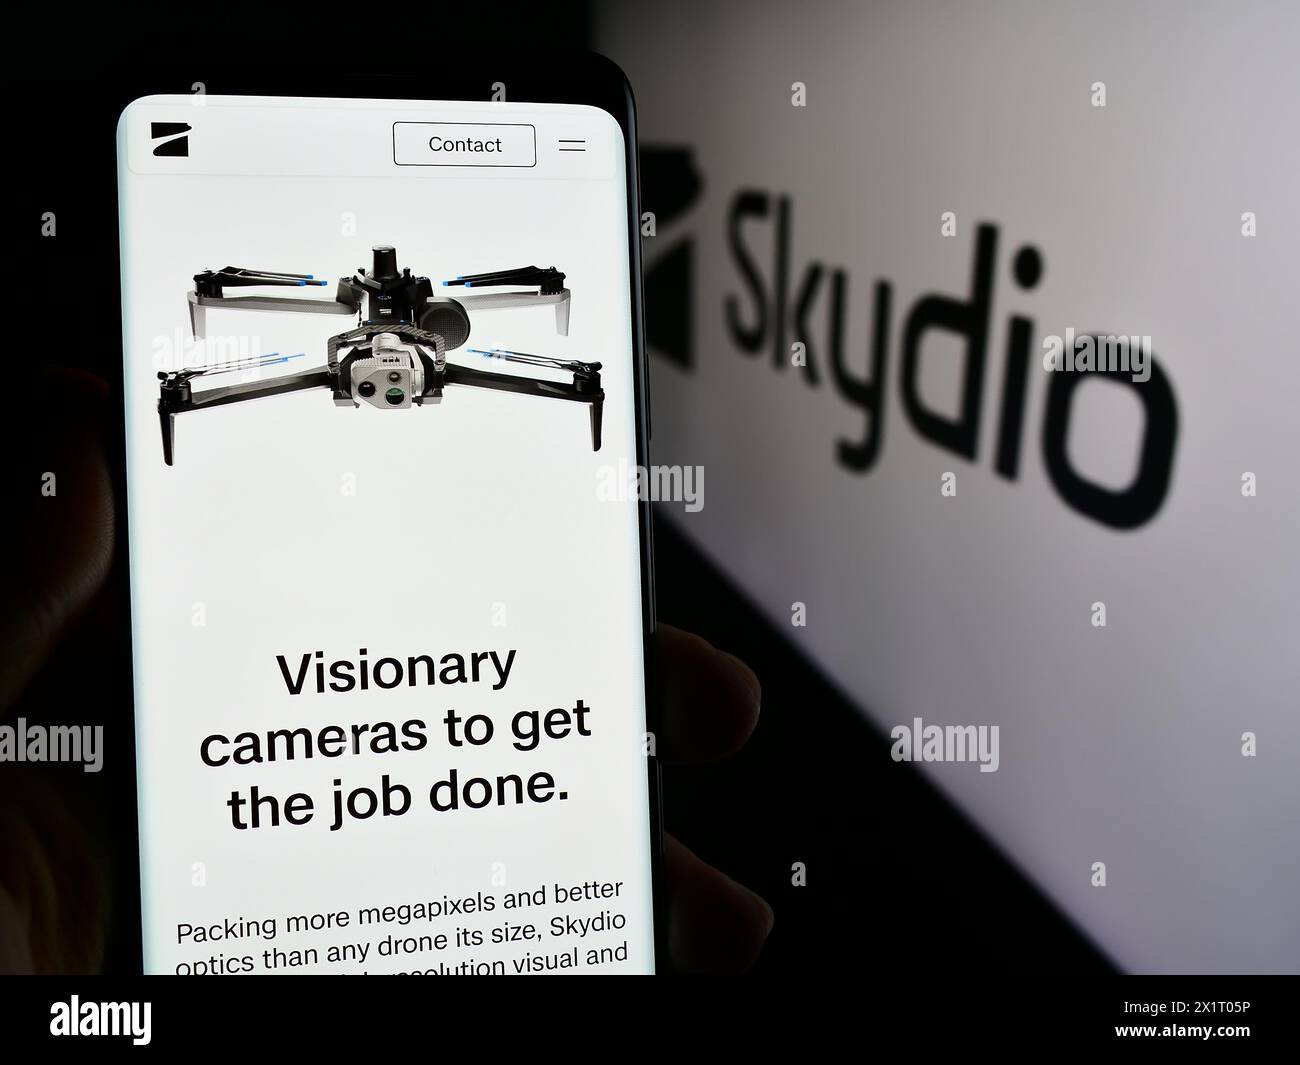 Persona che possiede un telefono cellulare con pagina Web della società di produzione di droni Skydio Inc. Davanti al logo. Messa a fuoco al centro del display del telefono. Foto Stock